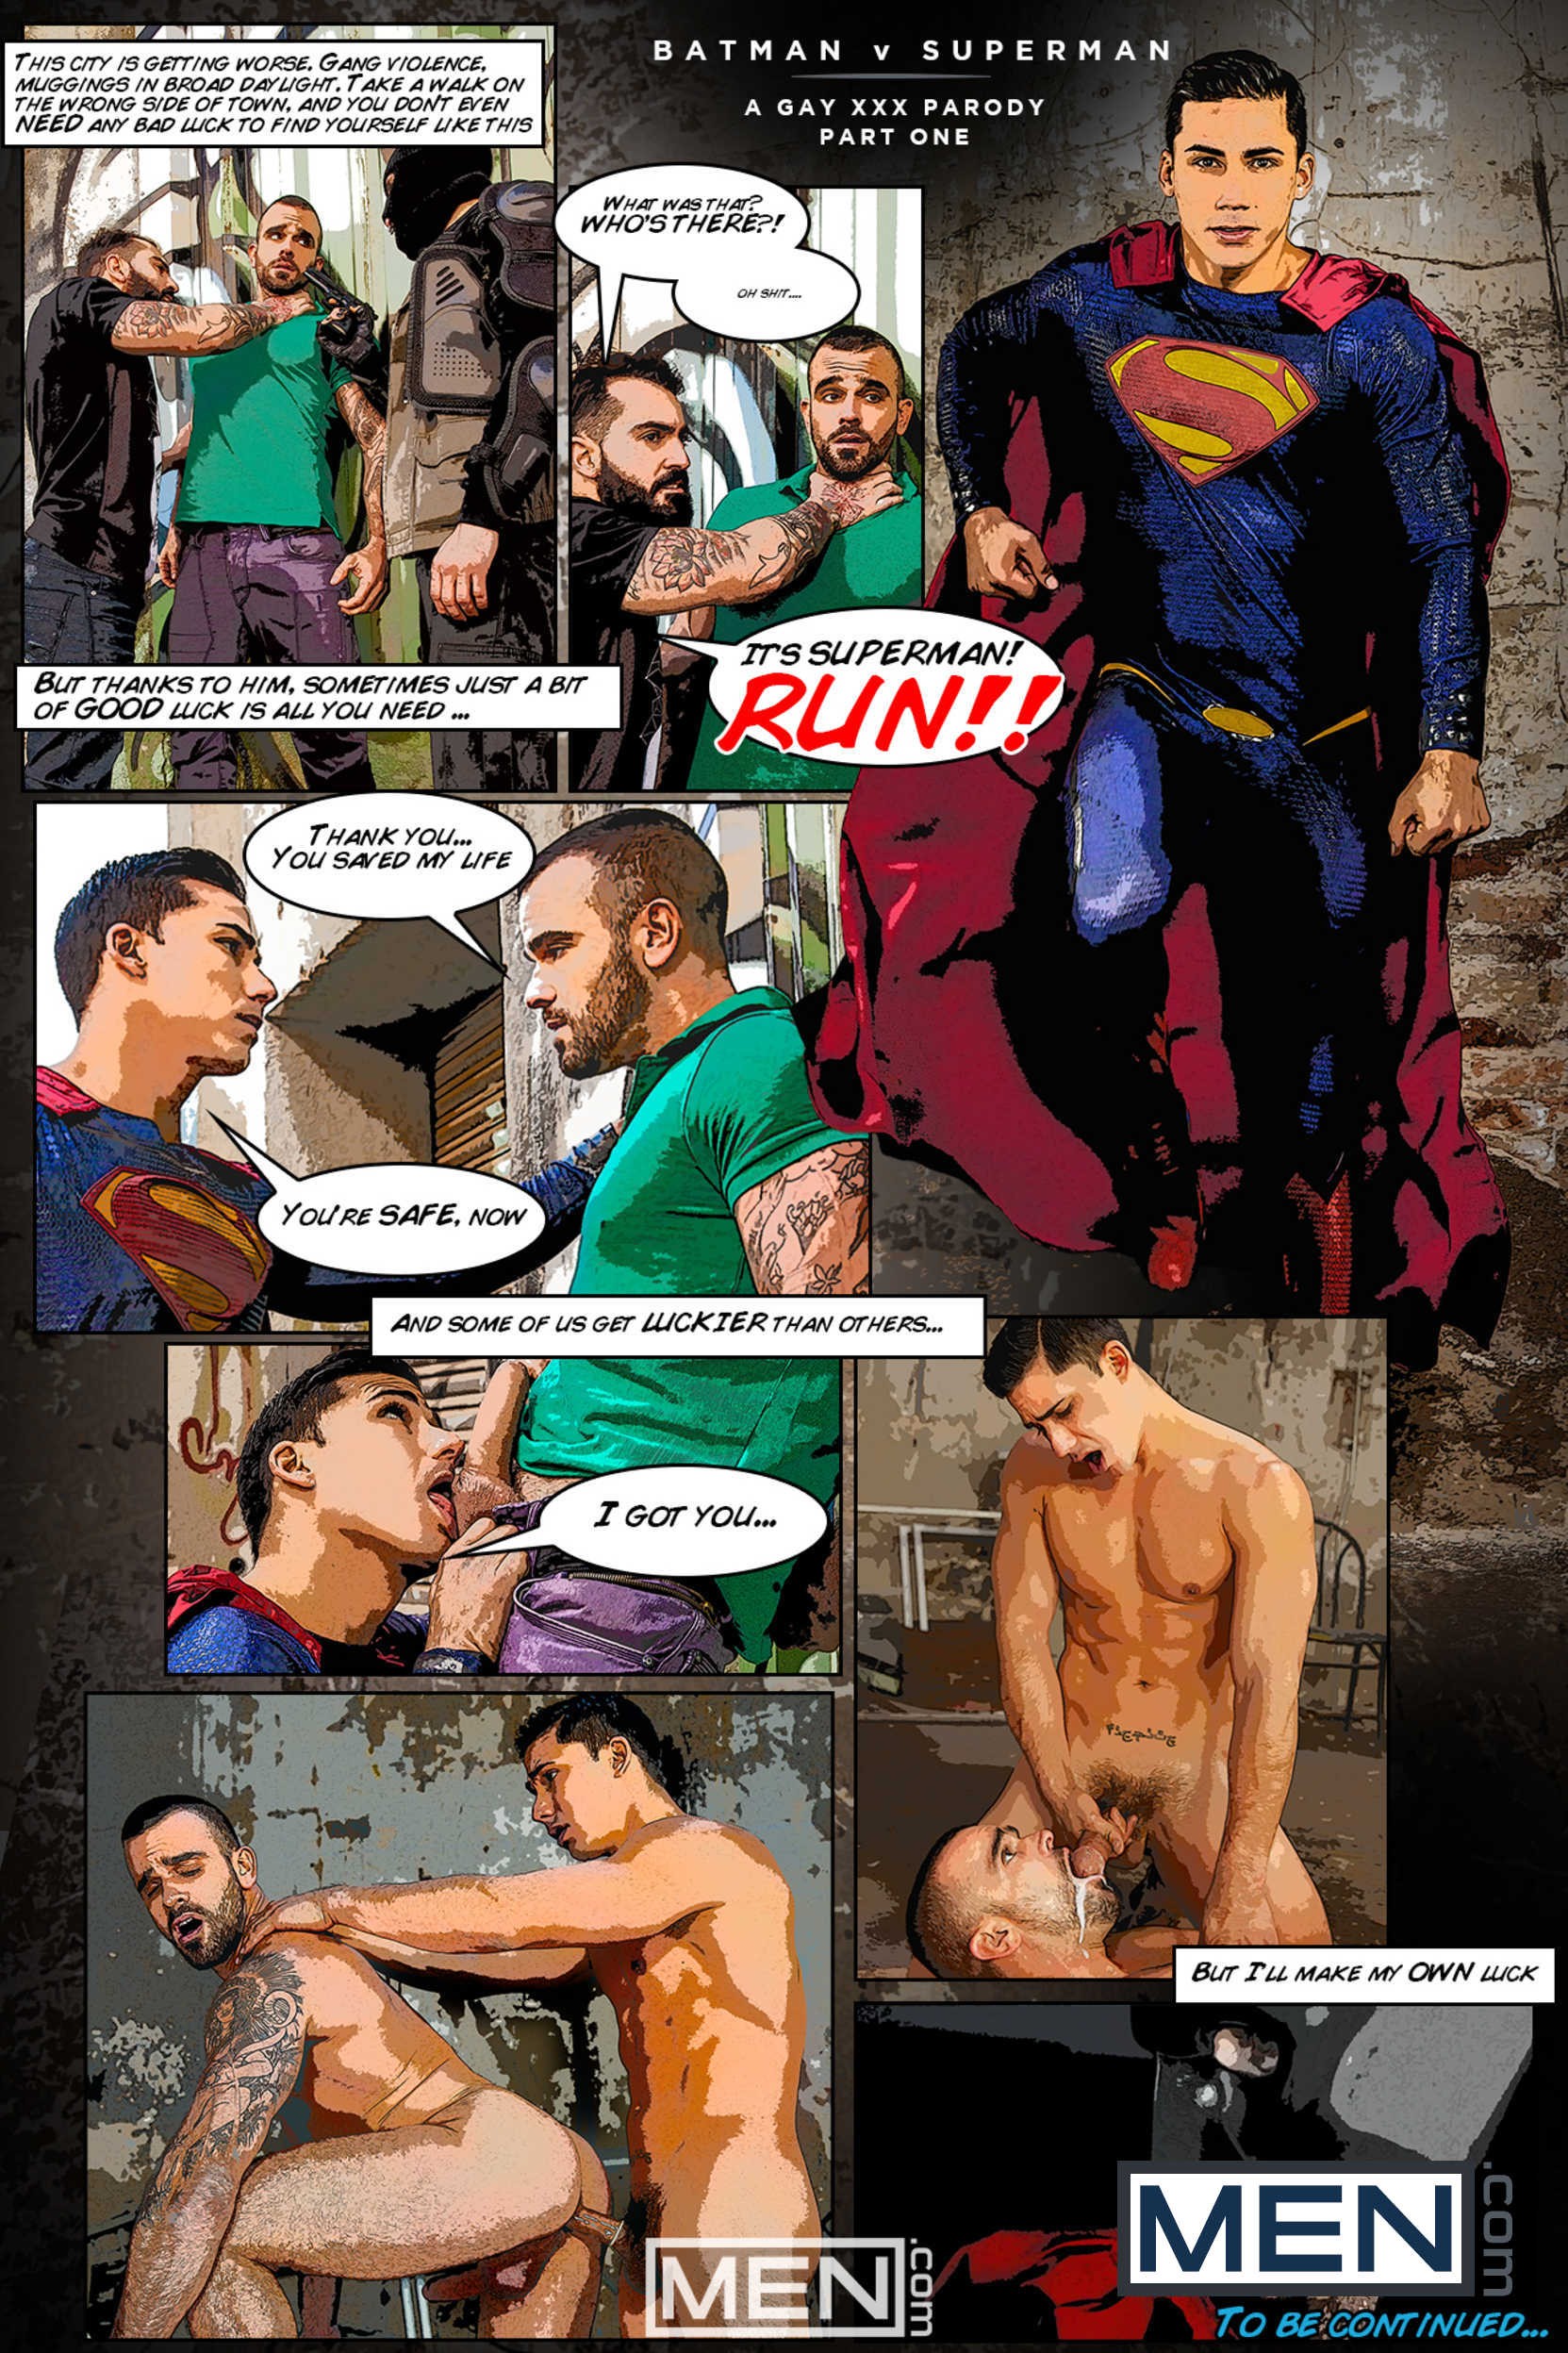 V gay batman porno superman Batman Vs